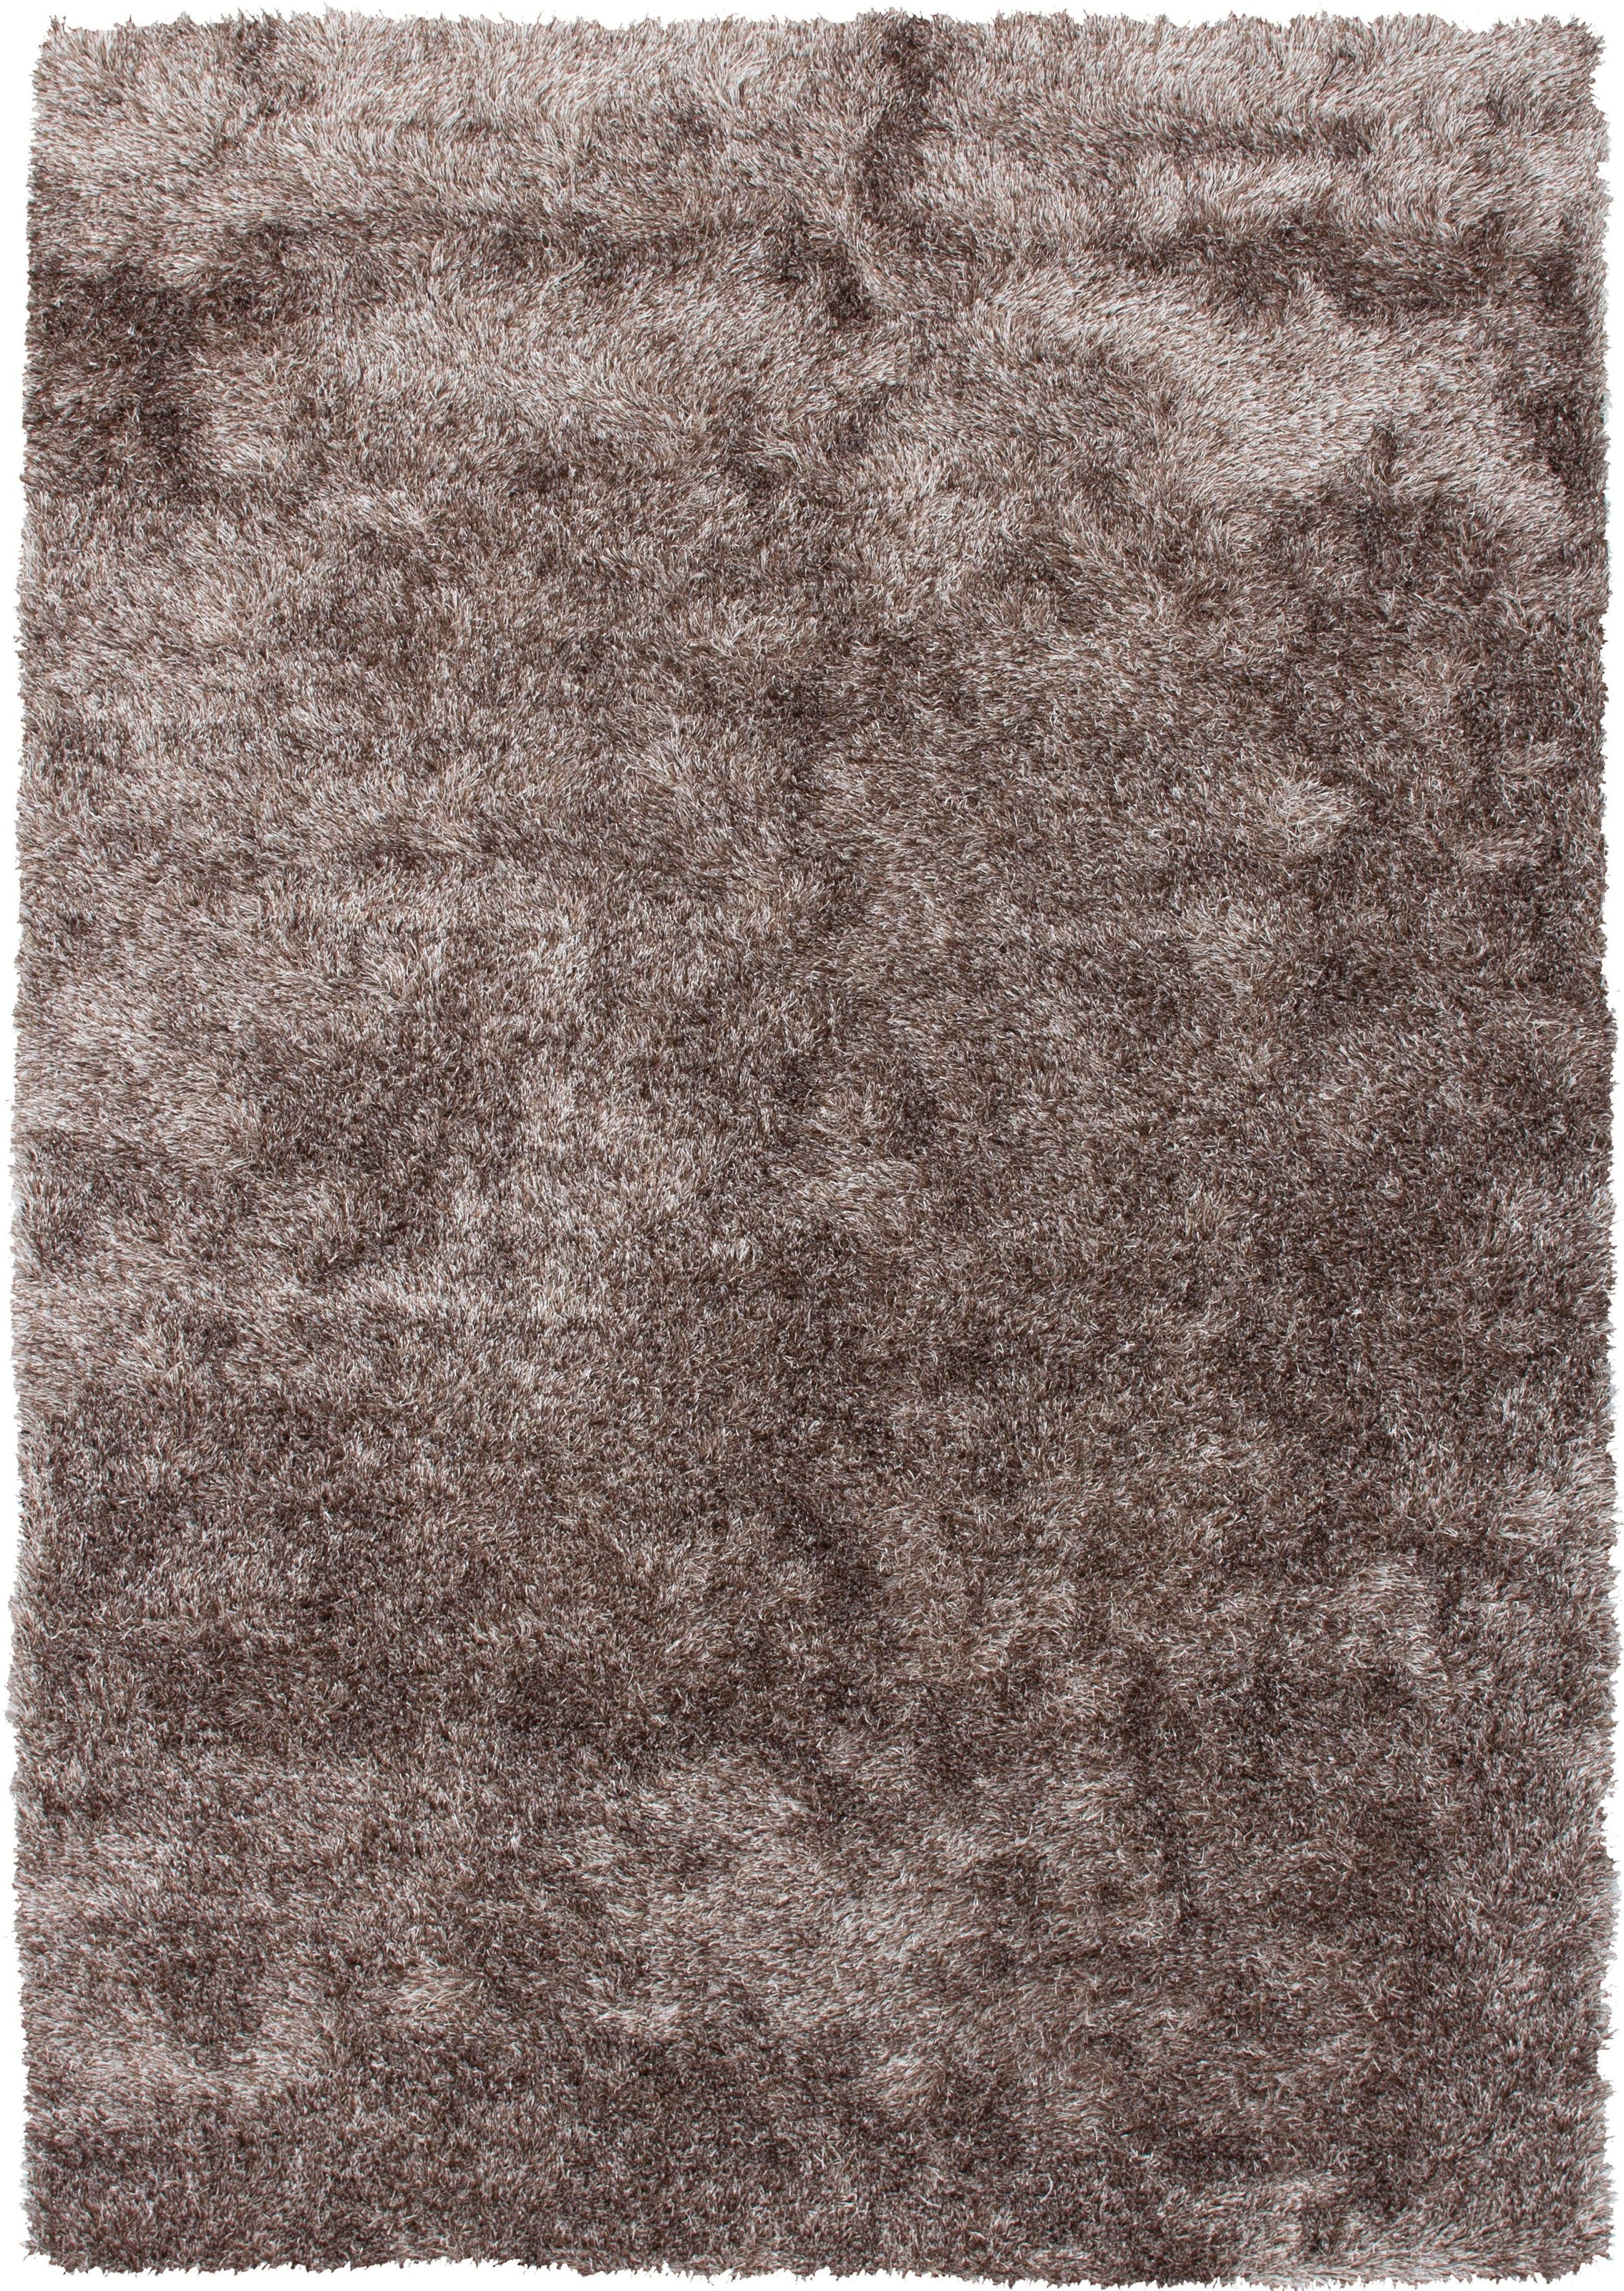 Bruno Banani Hochflor-Teppich »Alga«, rechteckig, Uni-Farben, besonders weich und kuschelig